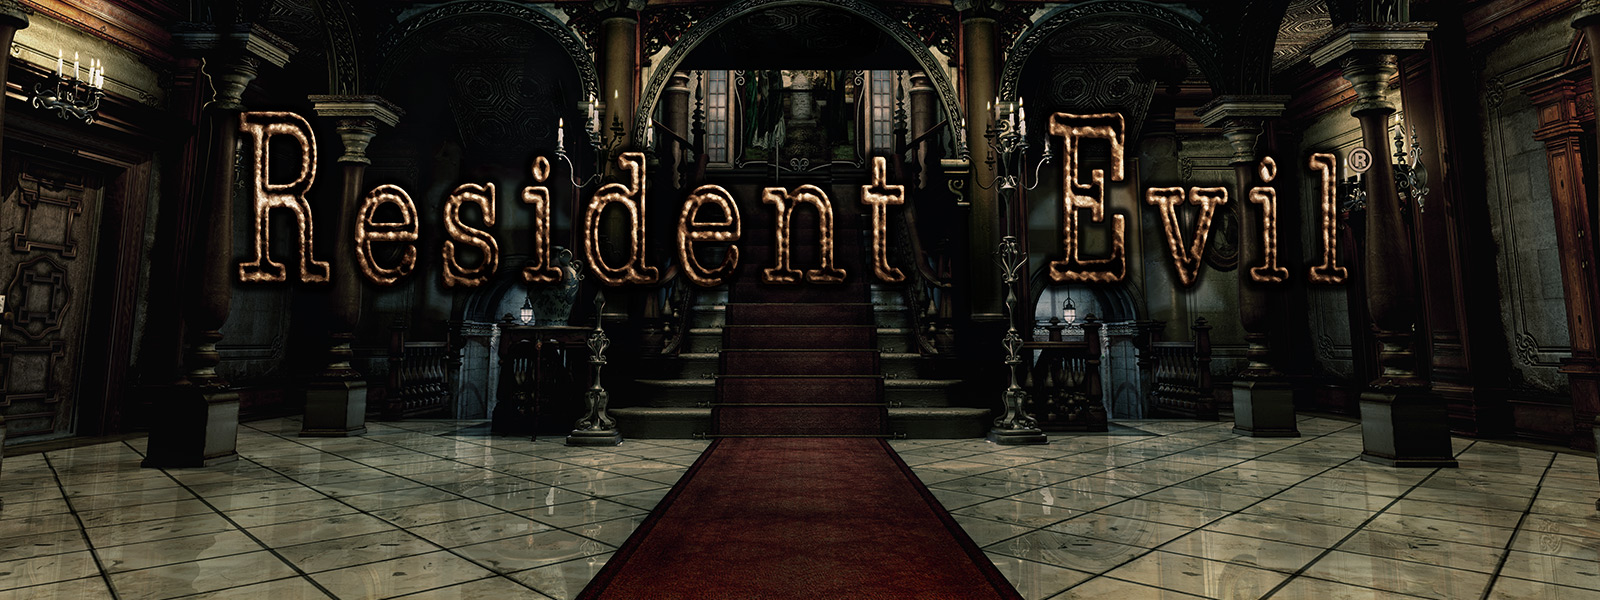 Resident Evil, scéna z vchodu do klenutej chodby so schodmi s červeným kobercom